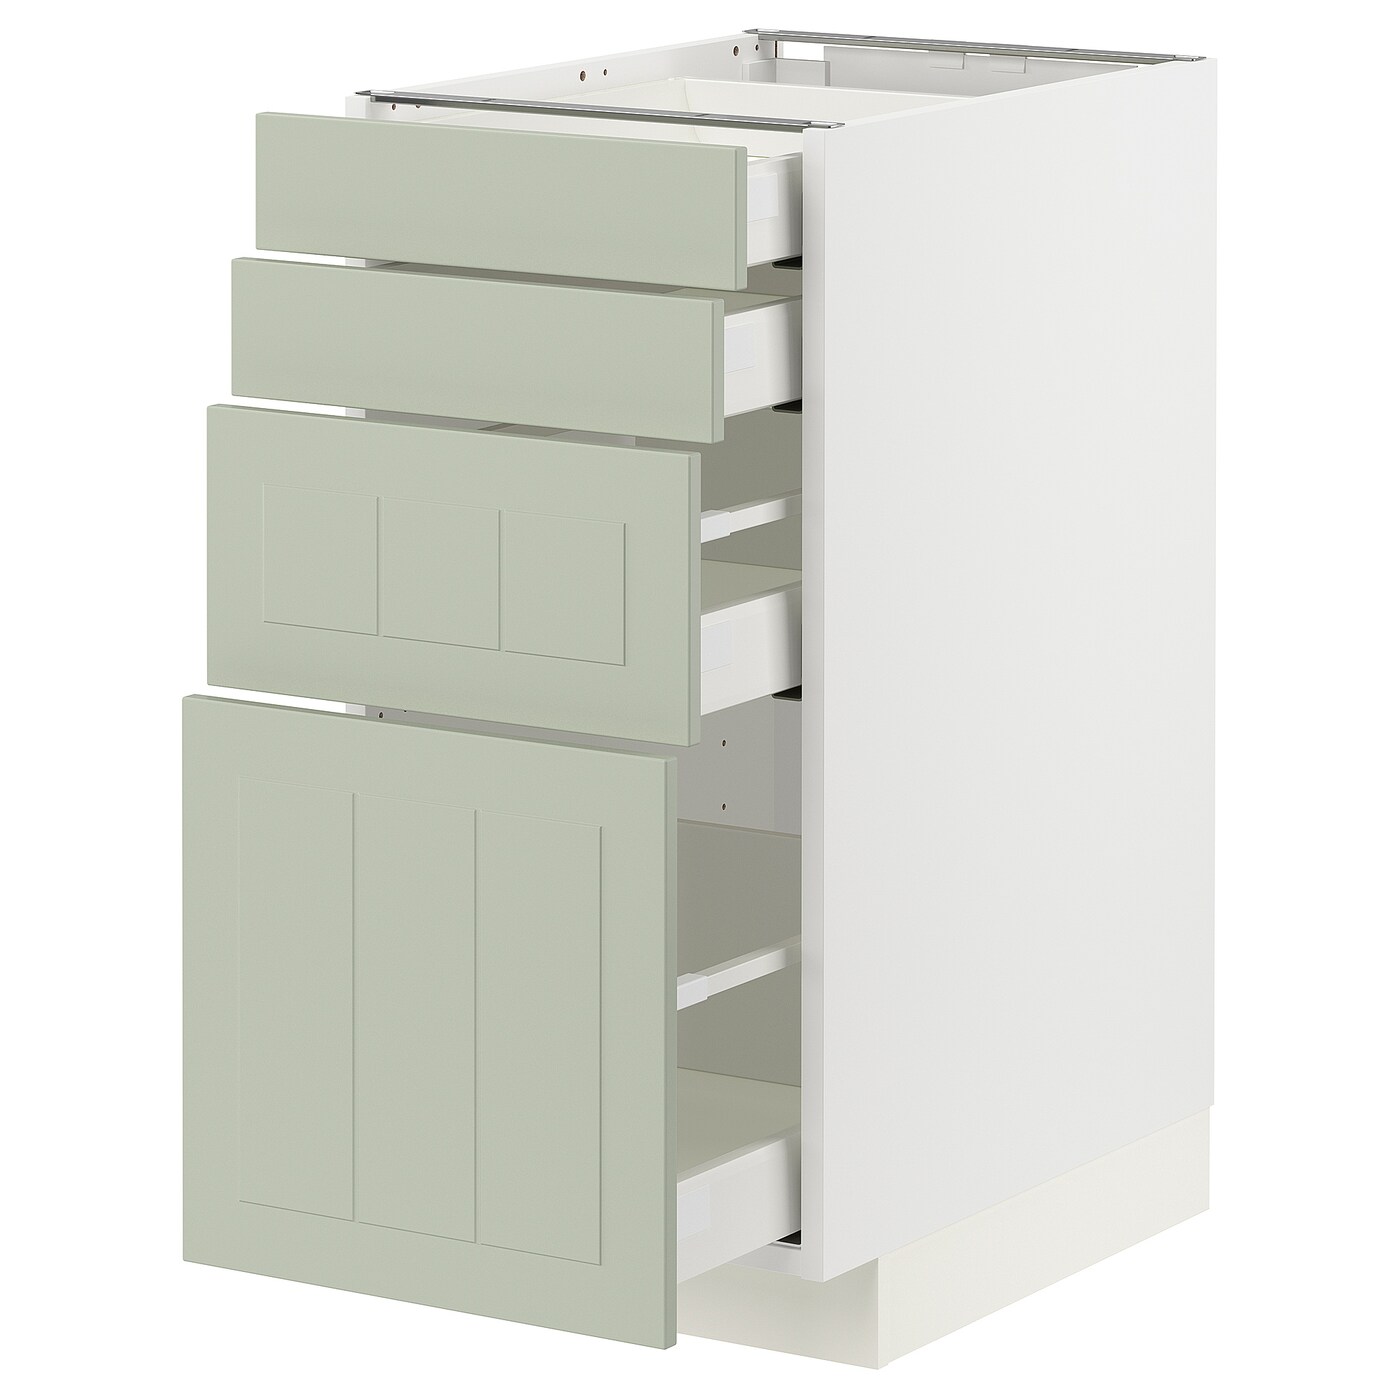 Напольный шкаф  - IKEA METOD MAXIMERA, 88x61,9x40см, белый/светло-серый, МЕТОД МАКСИМЕРА ИКЕА